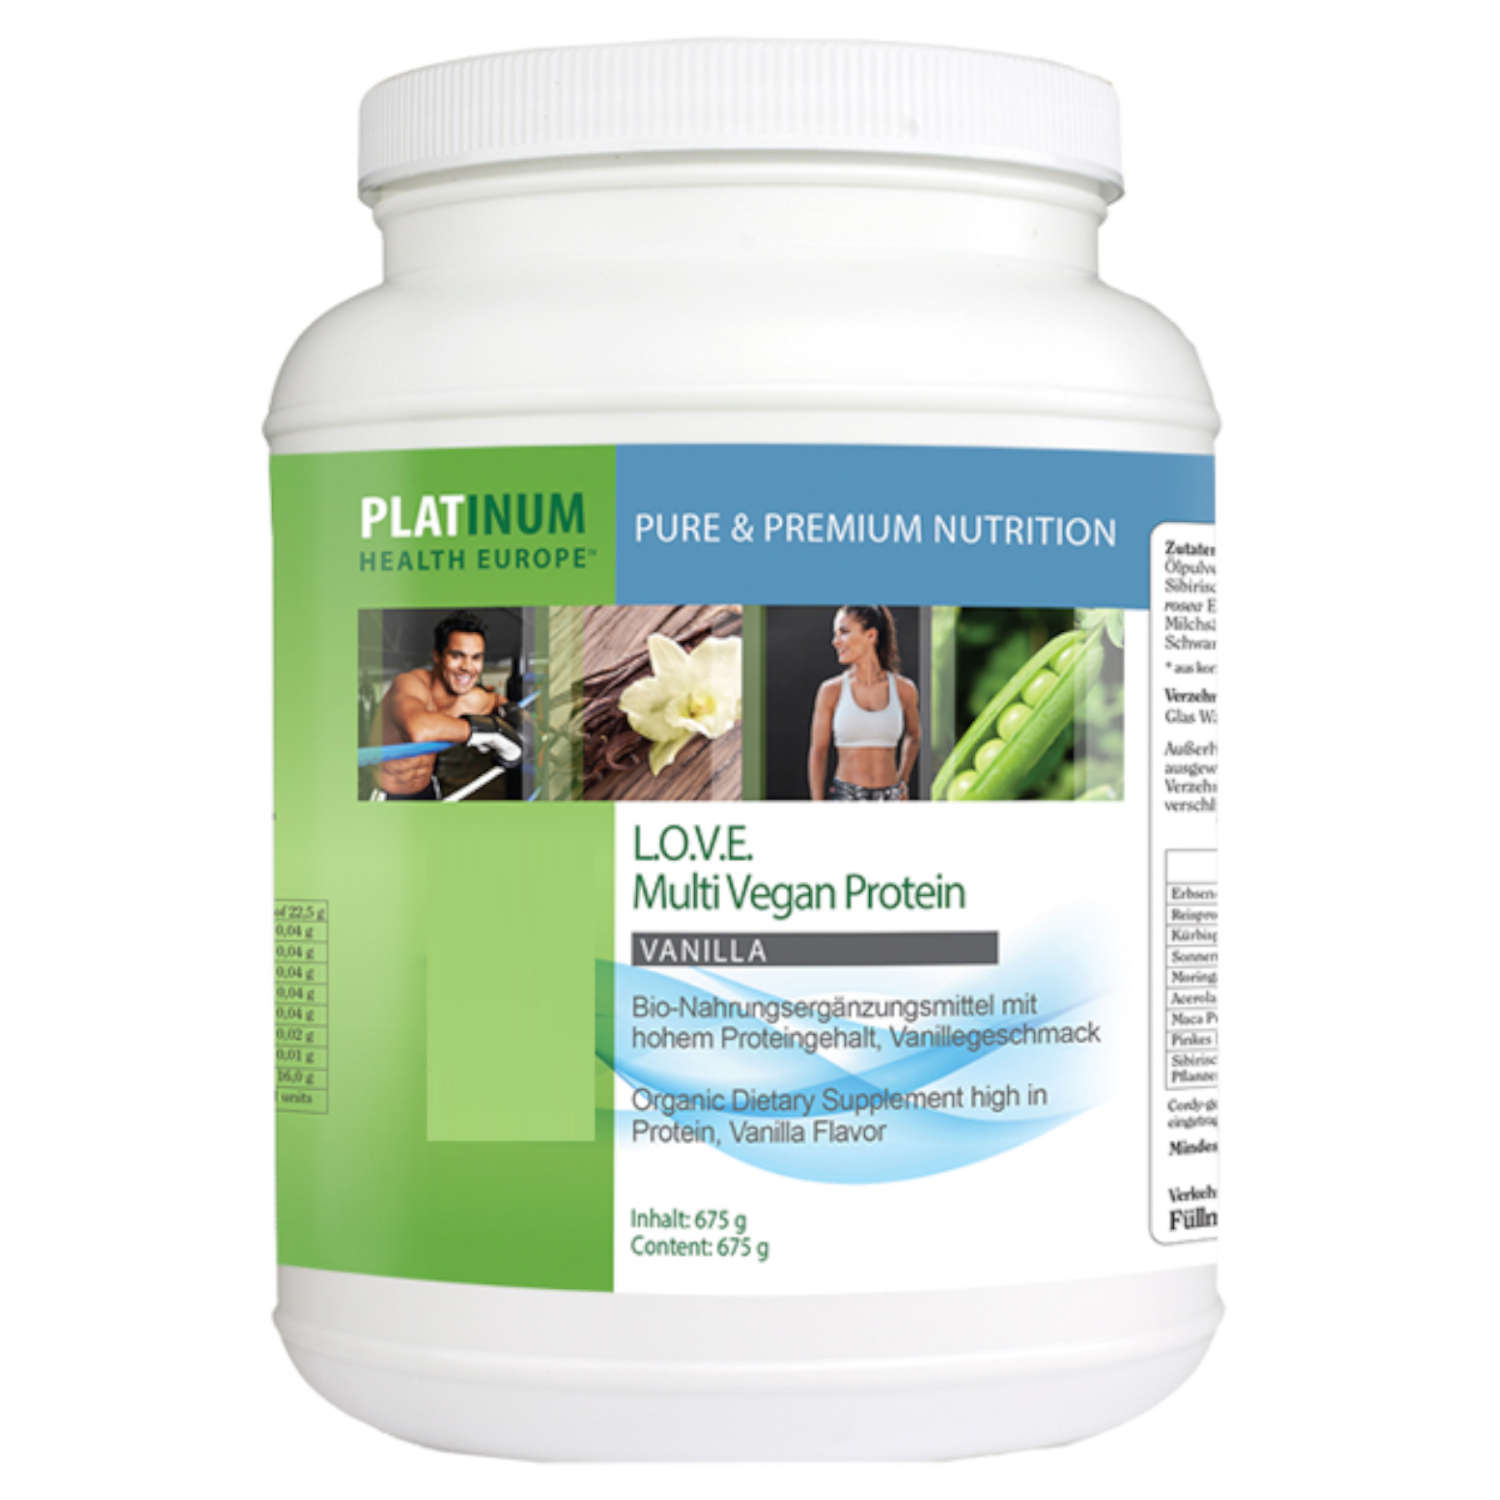 Love Multi Vegan Protein Vanilla von Platinum Health Europe - 675g